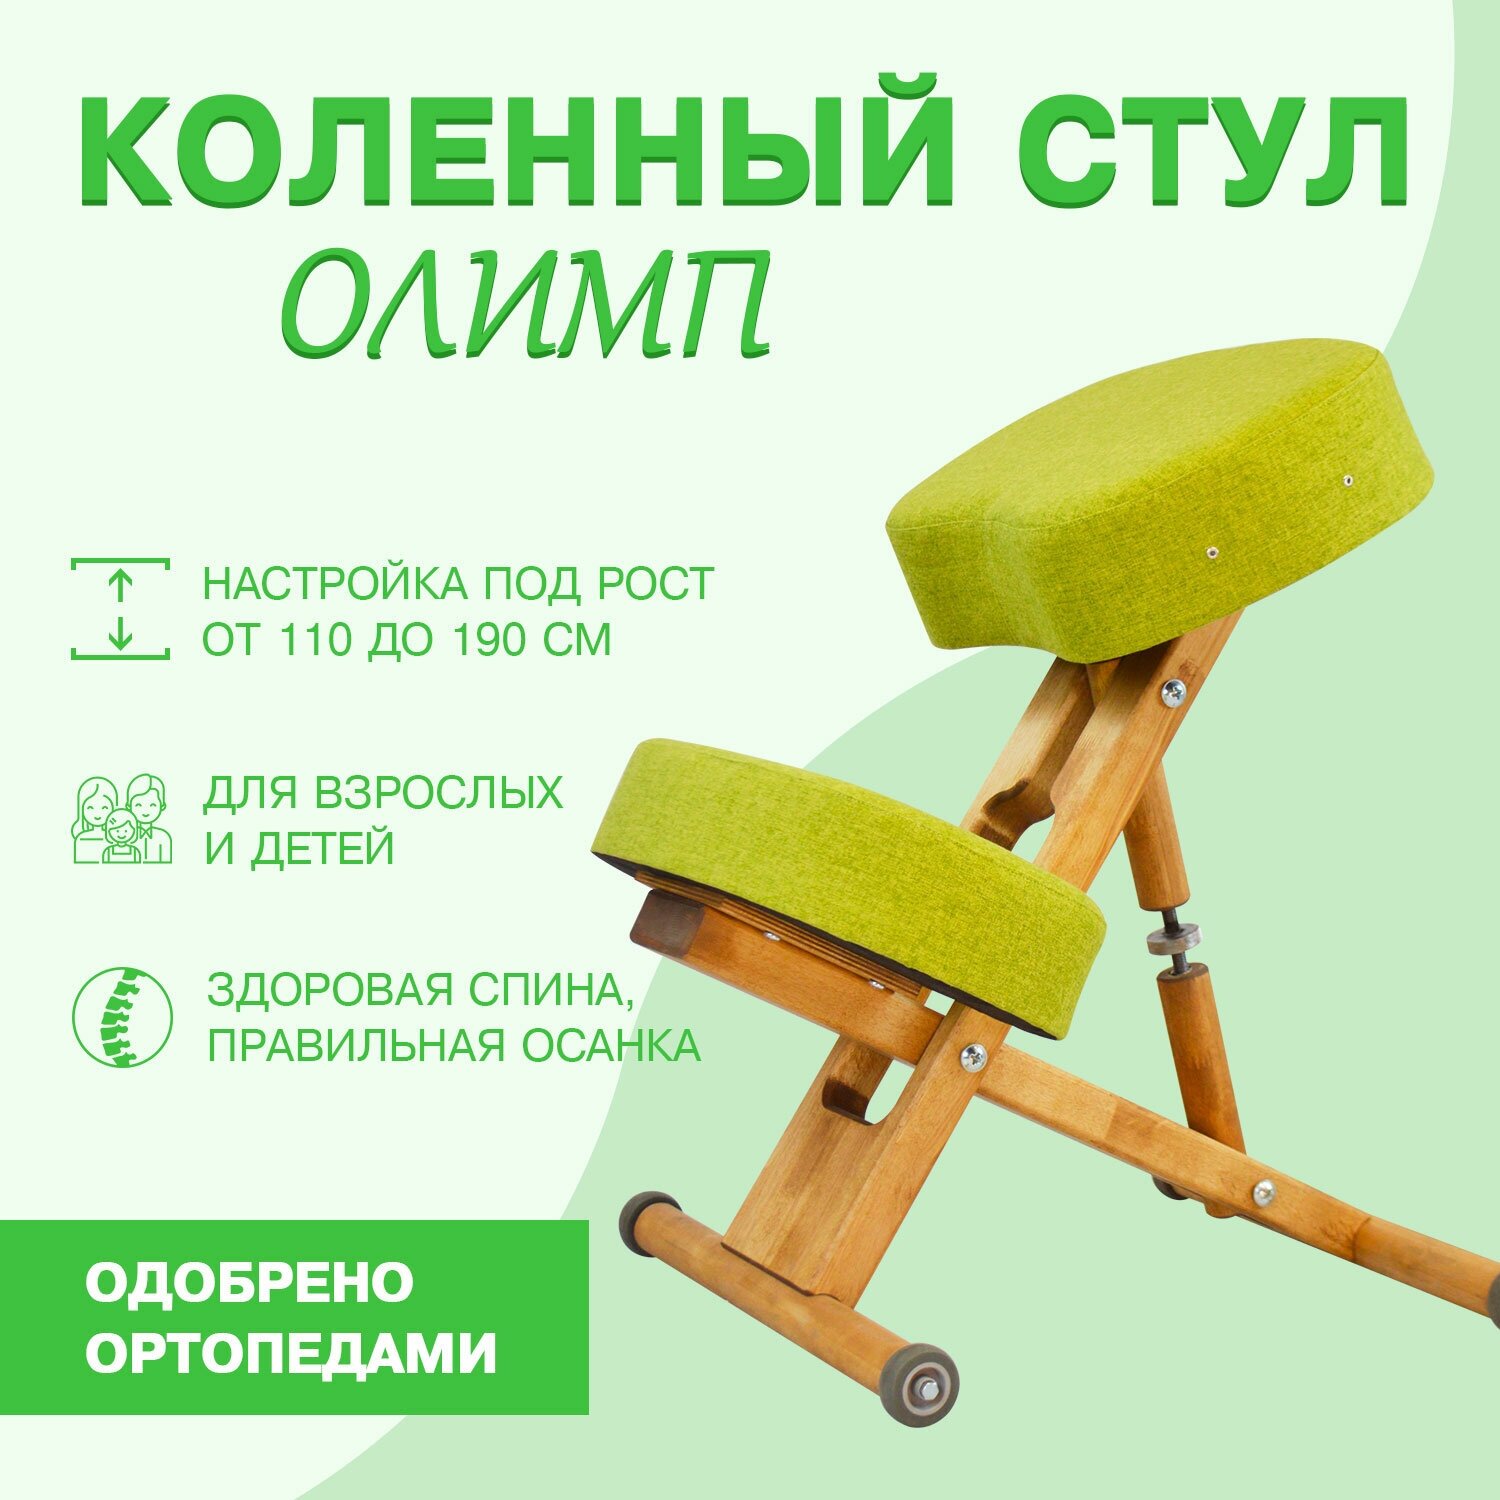 Ортопедический коленный стул для осанки Олимп Эко, растущий стул для детей и взрослых, зеленый, деревянные ножки